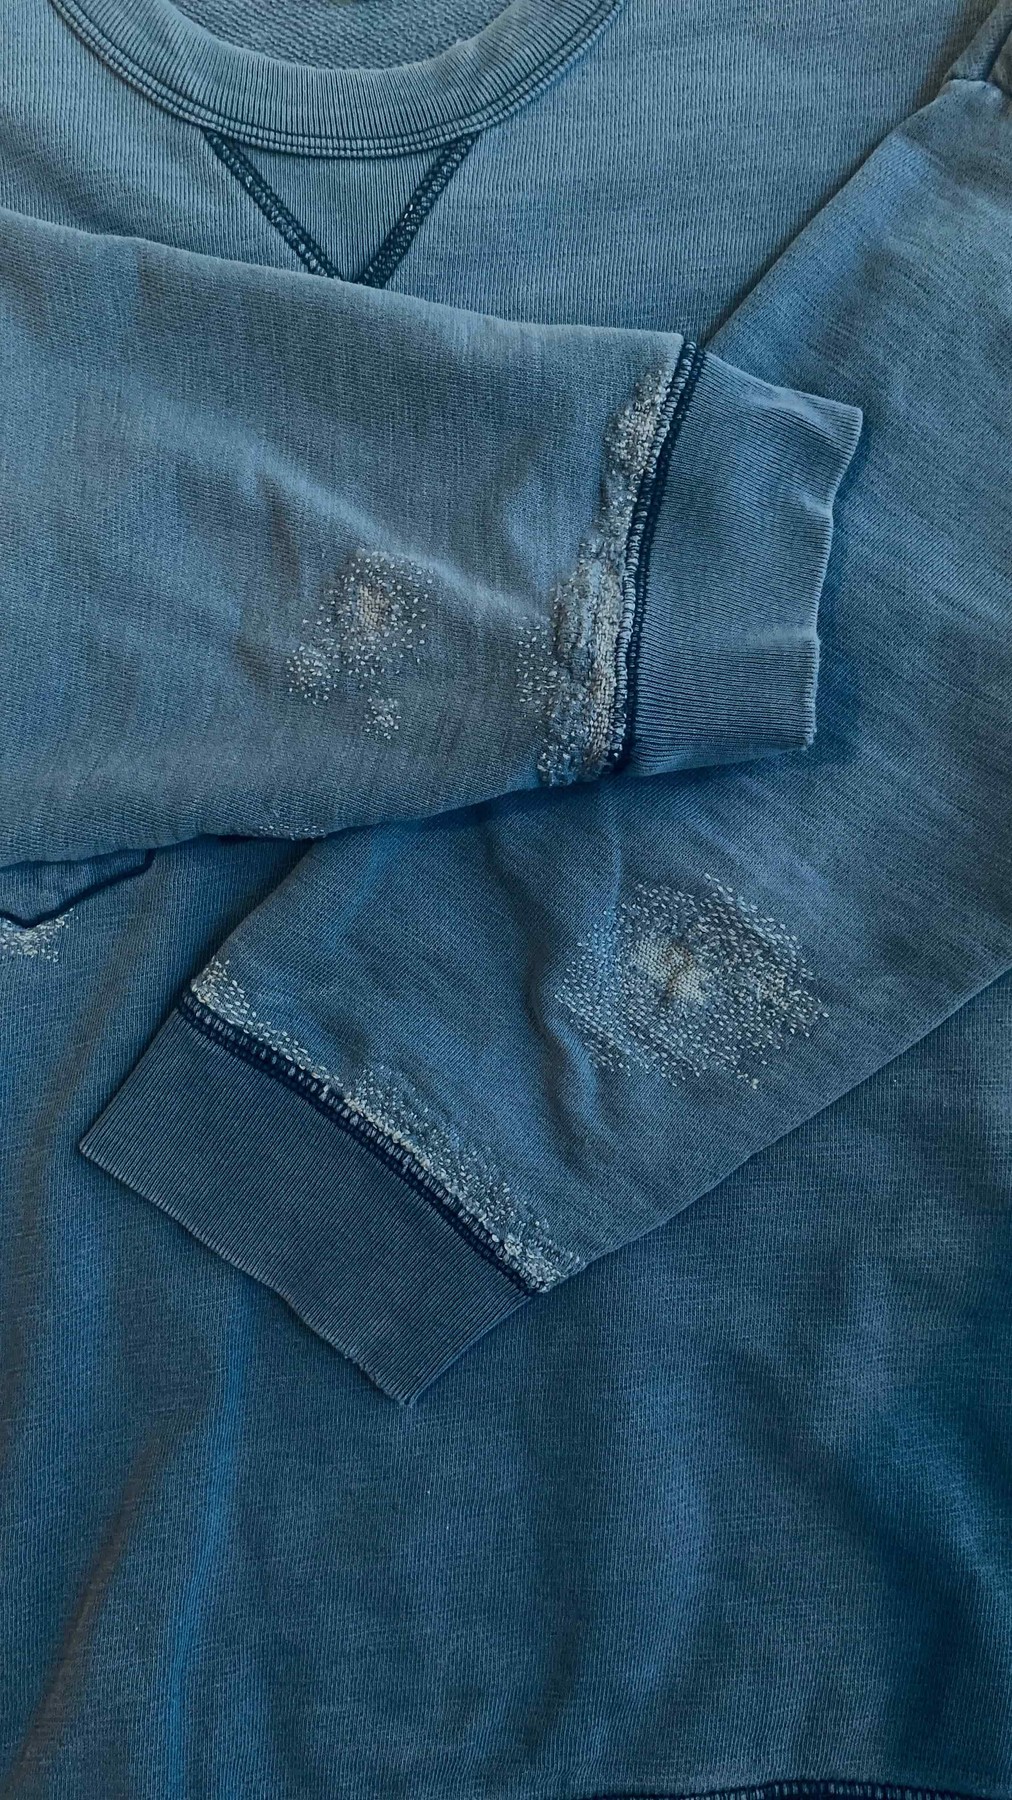 Blue Gap sweatshirt darned with blue threads.
